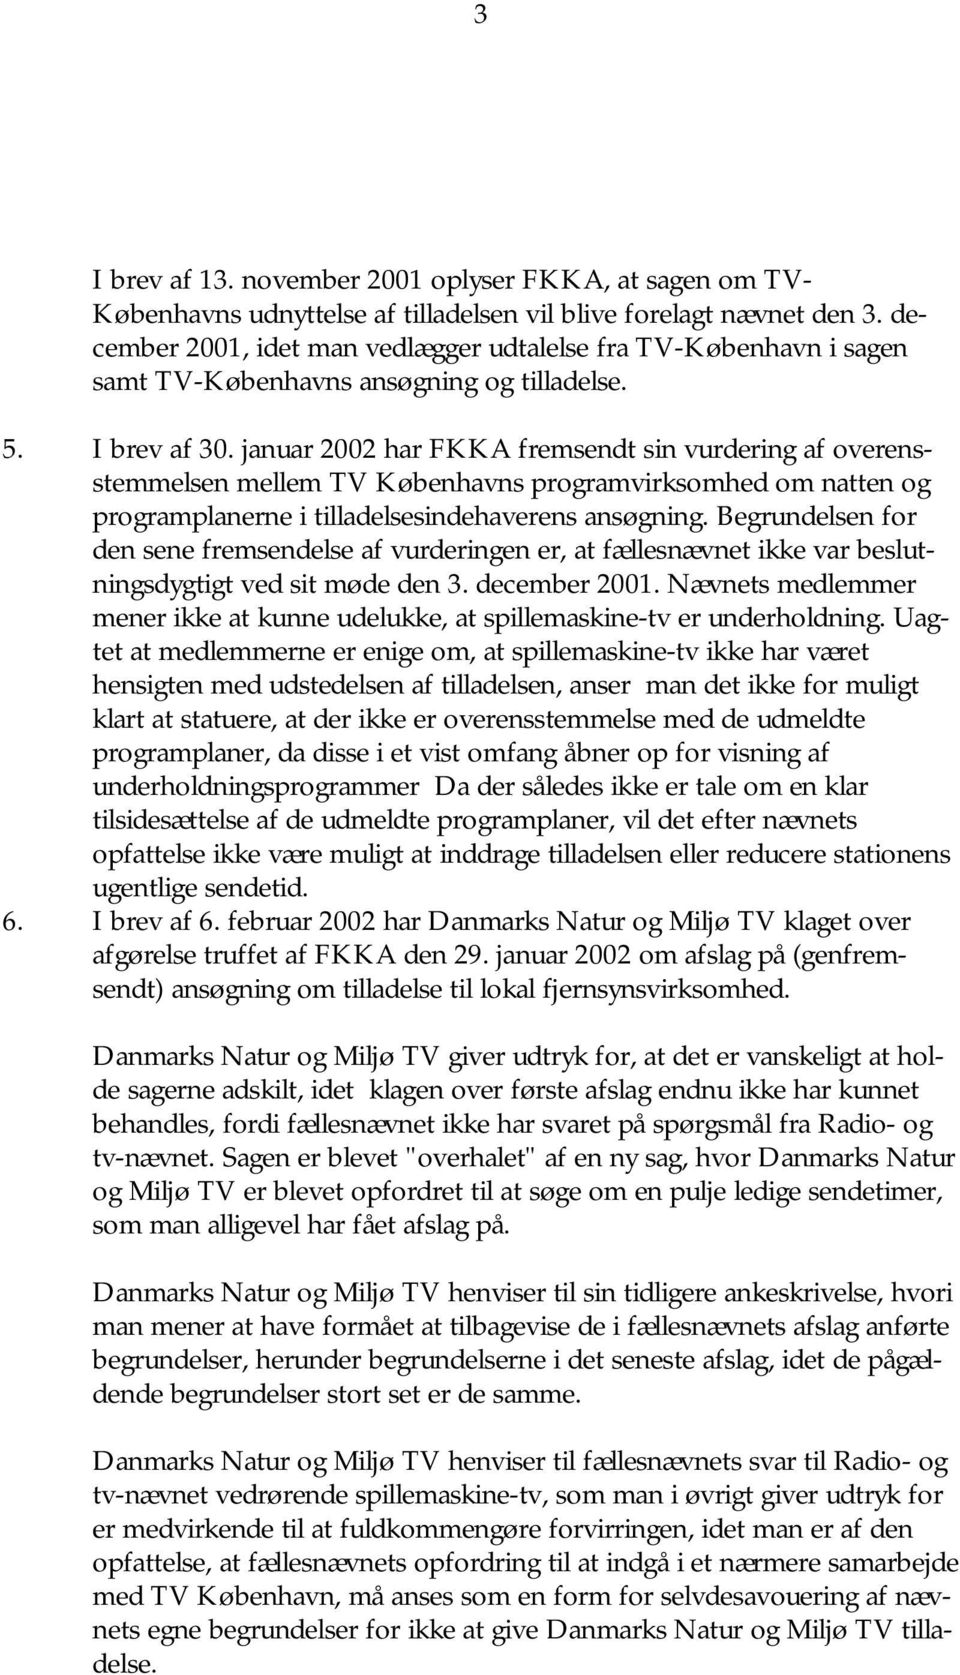 januar 2002 har FKKA fremsendt sin vurdering af overensstemmelsen mellem TV Københavns programvirksomhed om natten og programplanerne i tilladelsesindehaverens ansøgning.